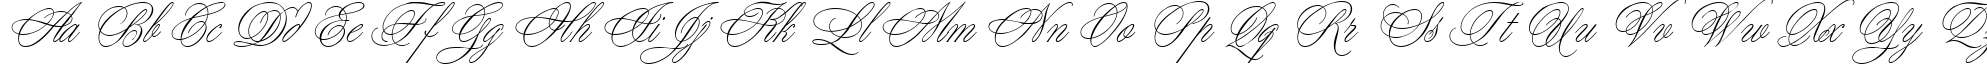 Пример написания английского алфавита шрифтом Young Baroque LET Plain:1.0